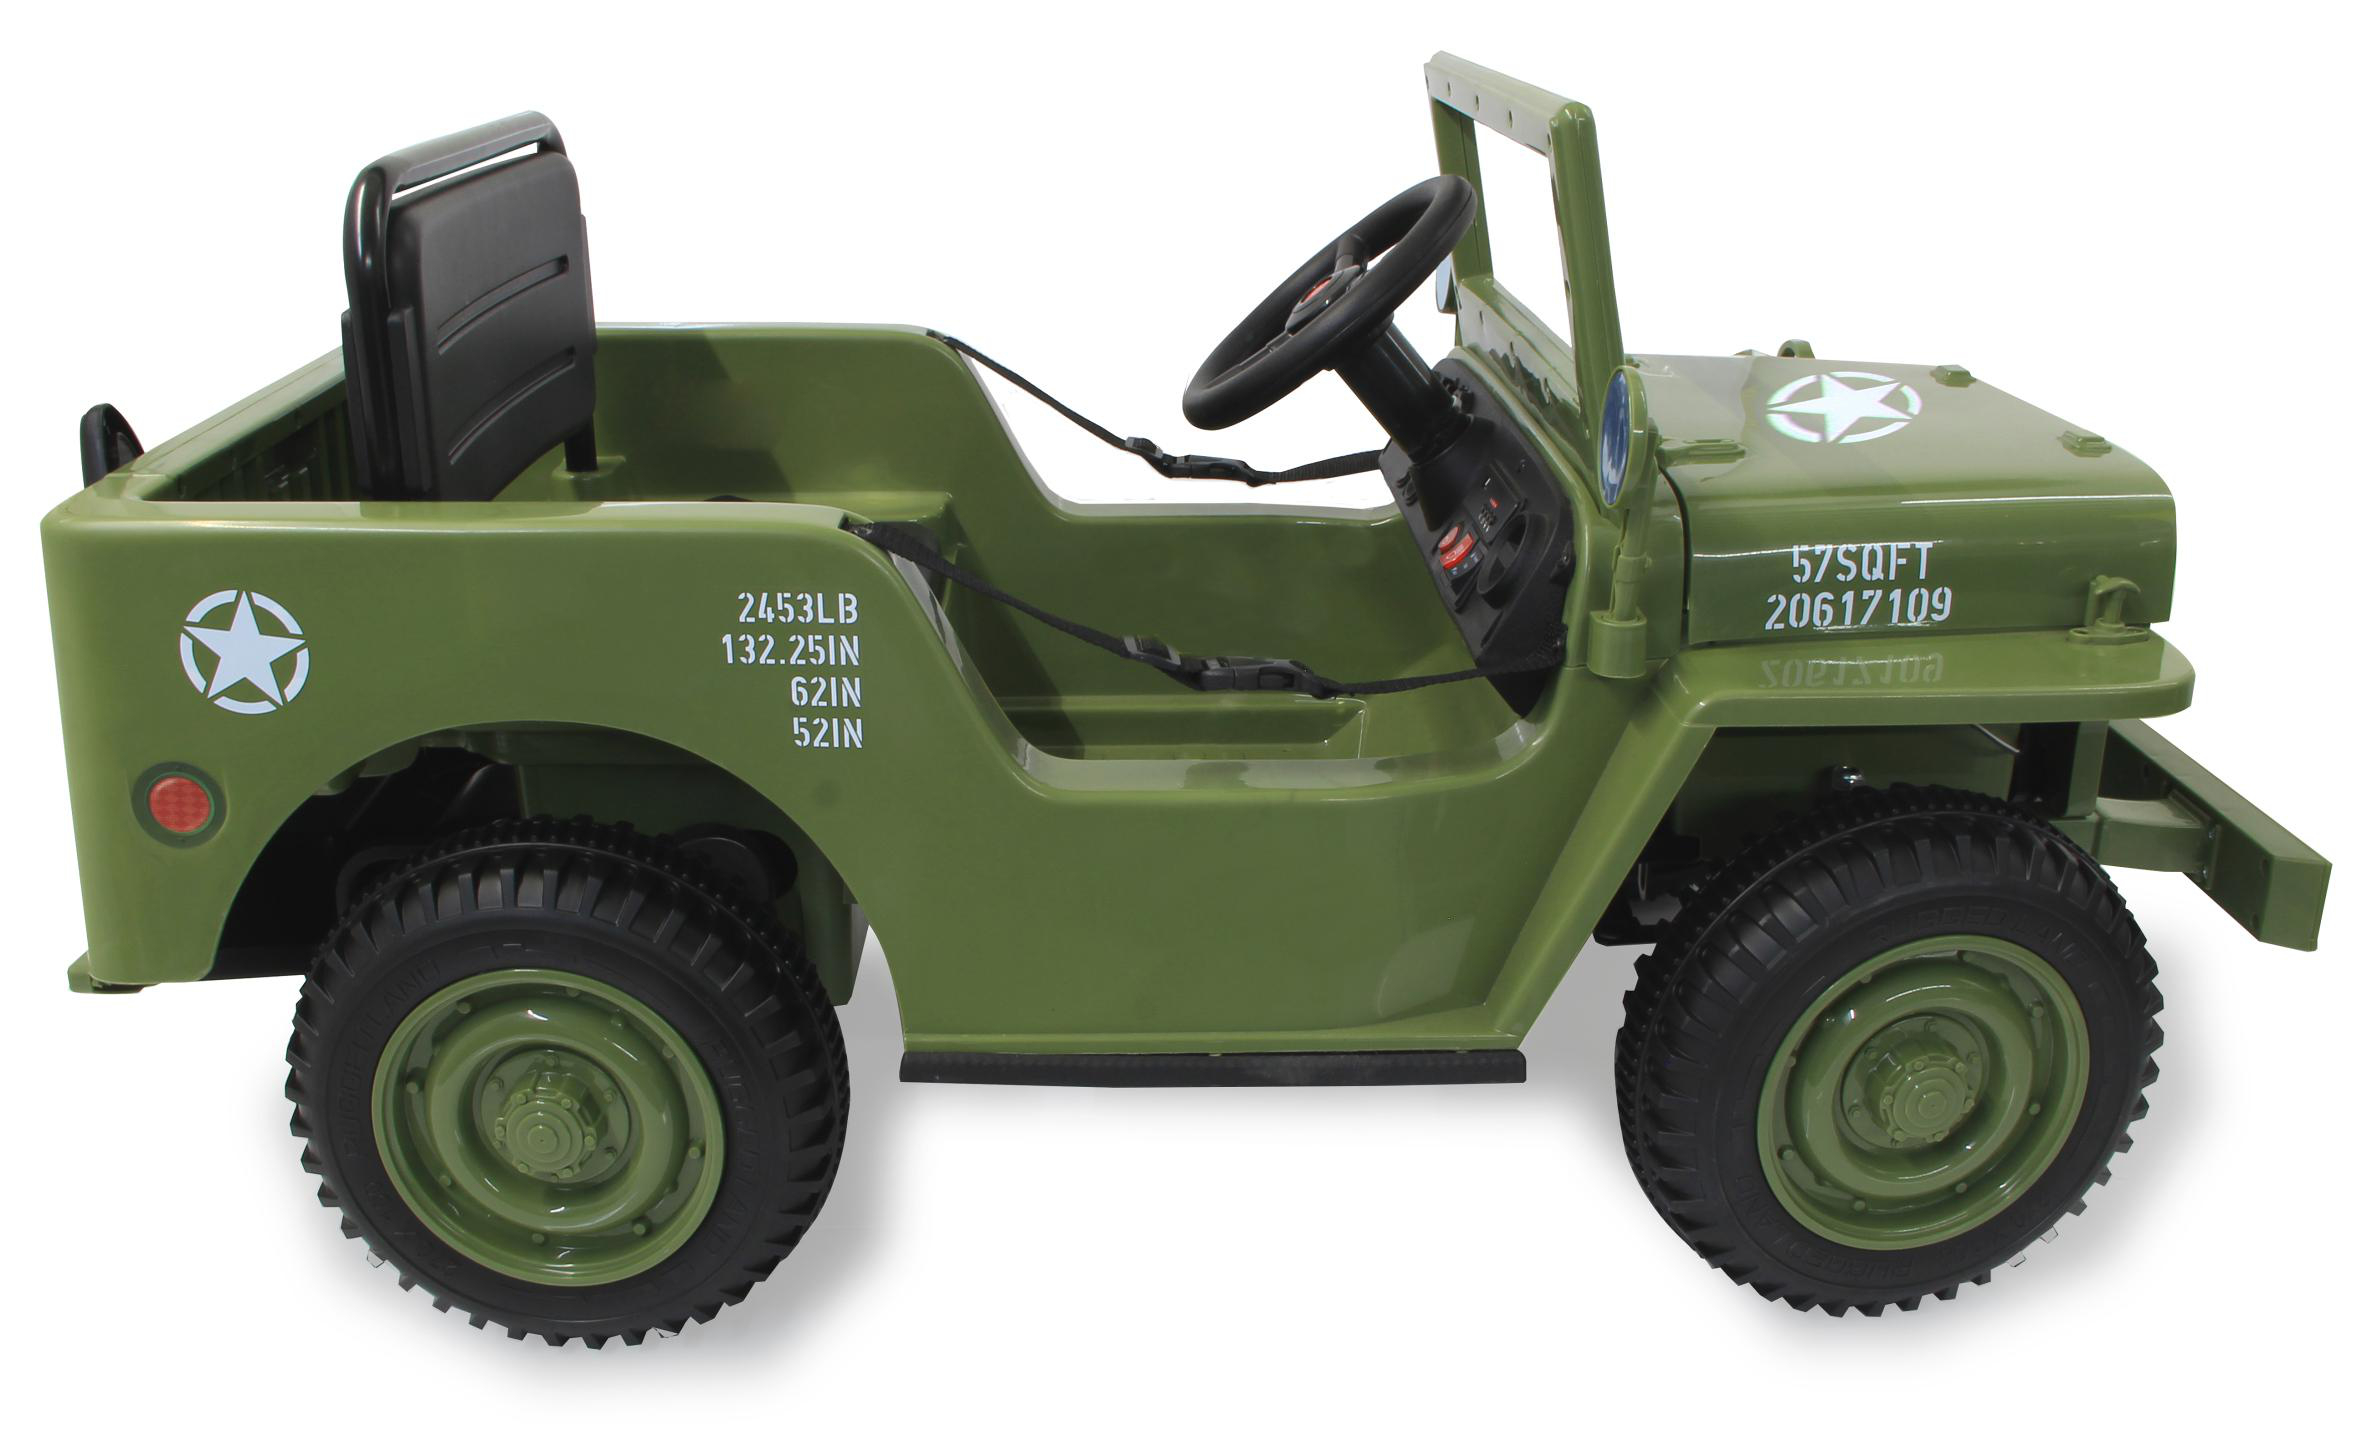 MB Jeep Army KIDS Willys Ride-on Grün JAMARA Elektrofahrzeug 12V